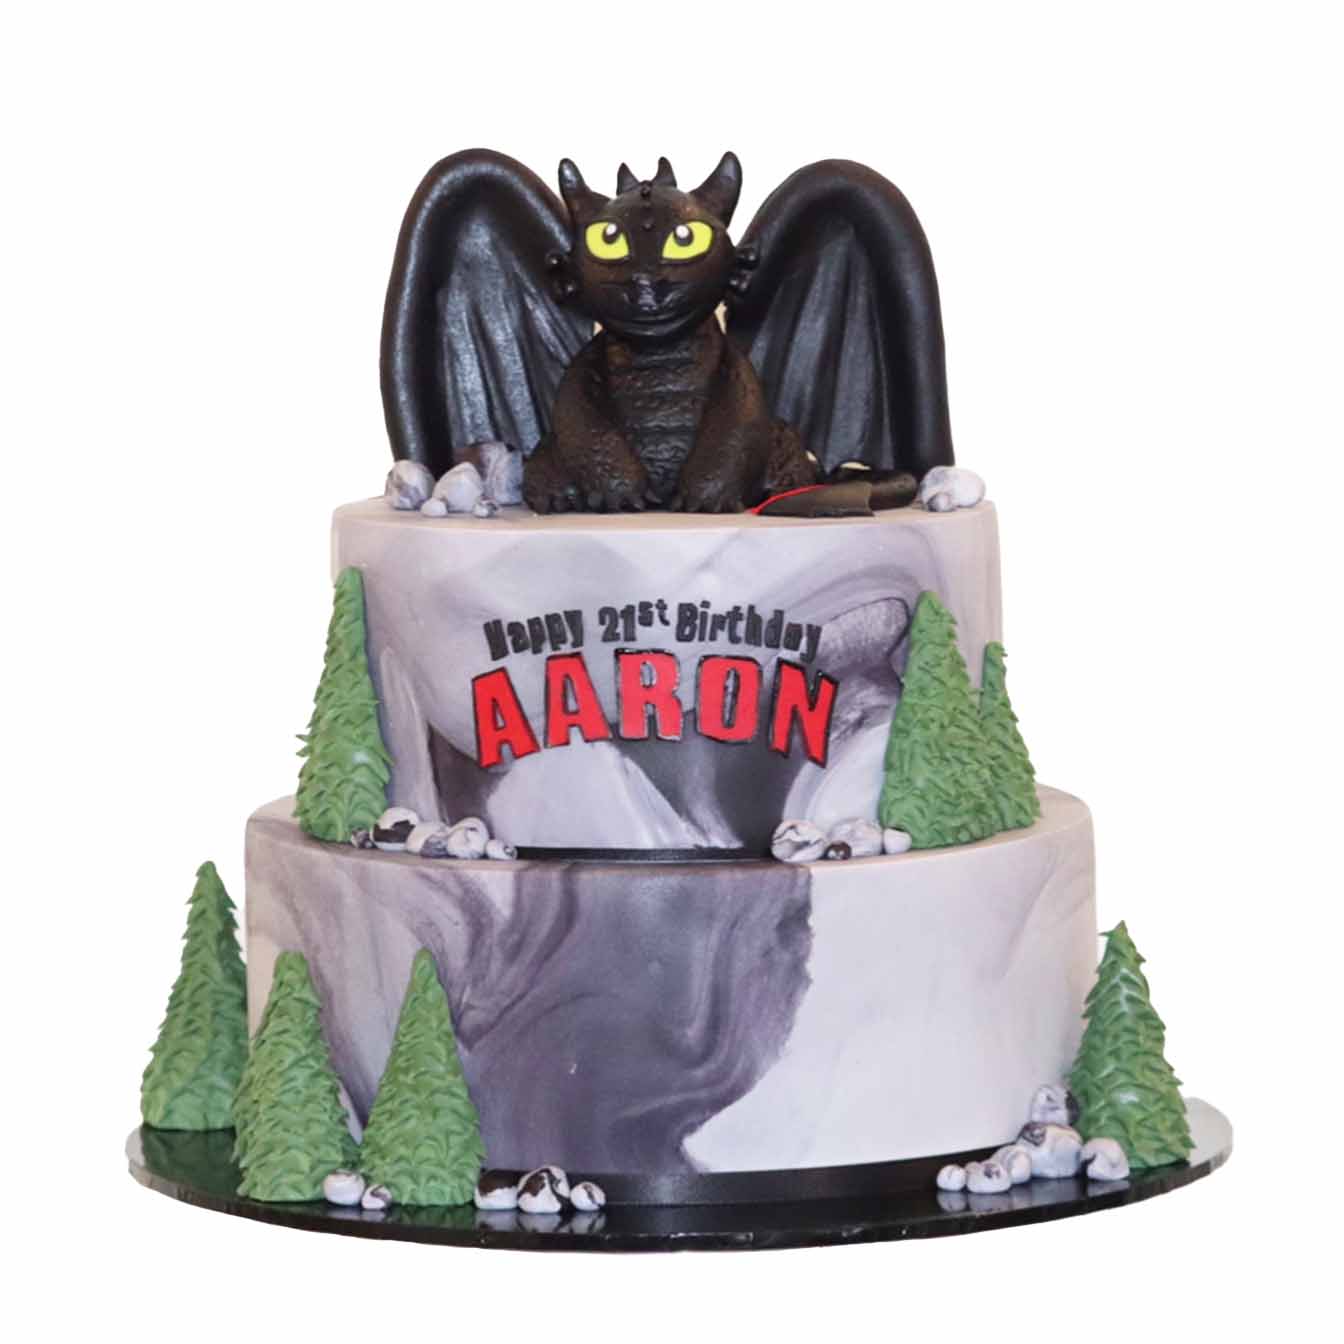 Yochana's Cake Delight! : Happy Birthday Aaron